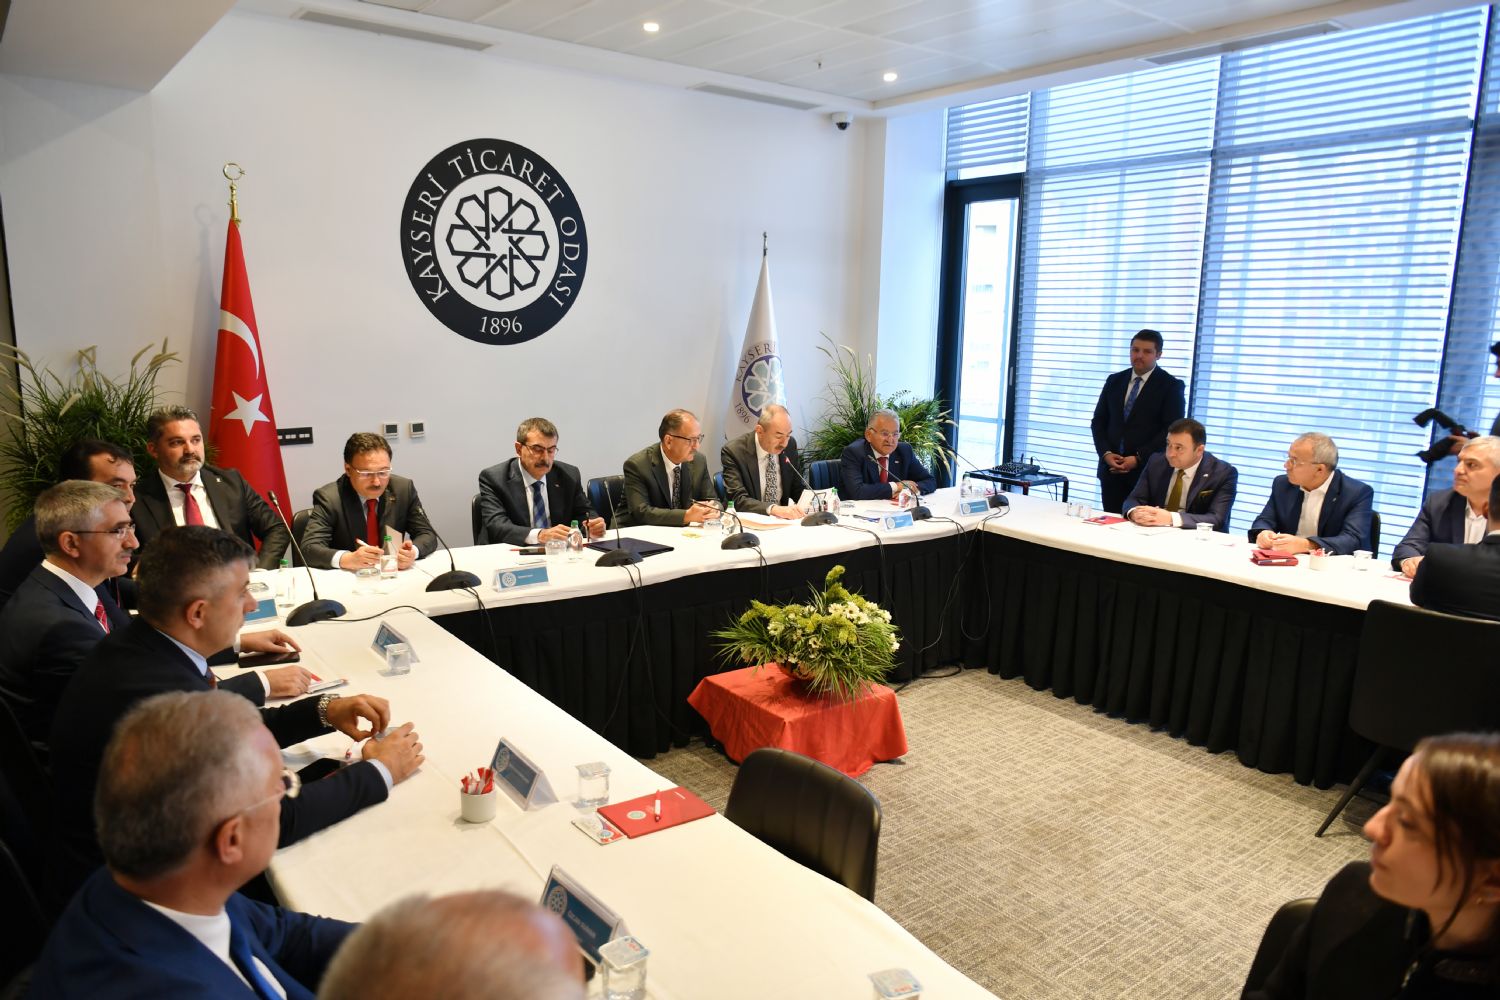 Kayseri OSB Başkanı Yalçın, Milli Eğitim Bakanı Tekin’e Mesleki Eğitime Yönelik Rapor Sundu